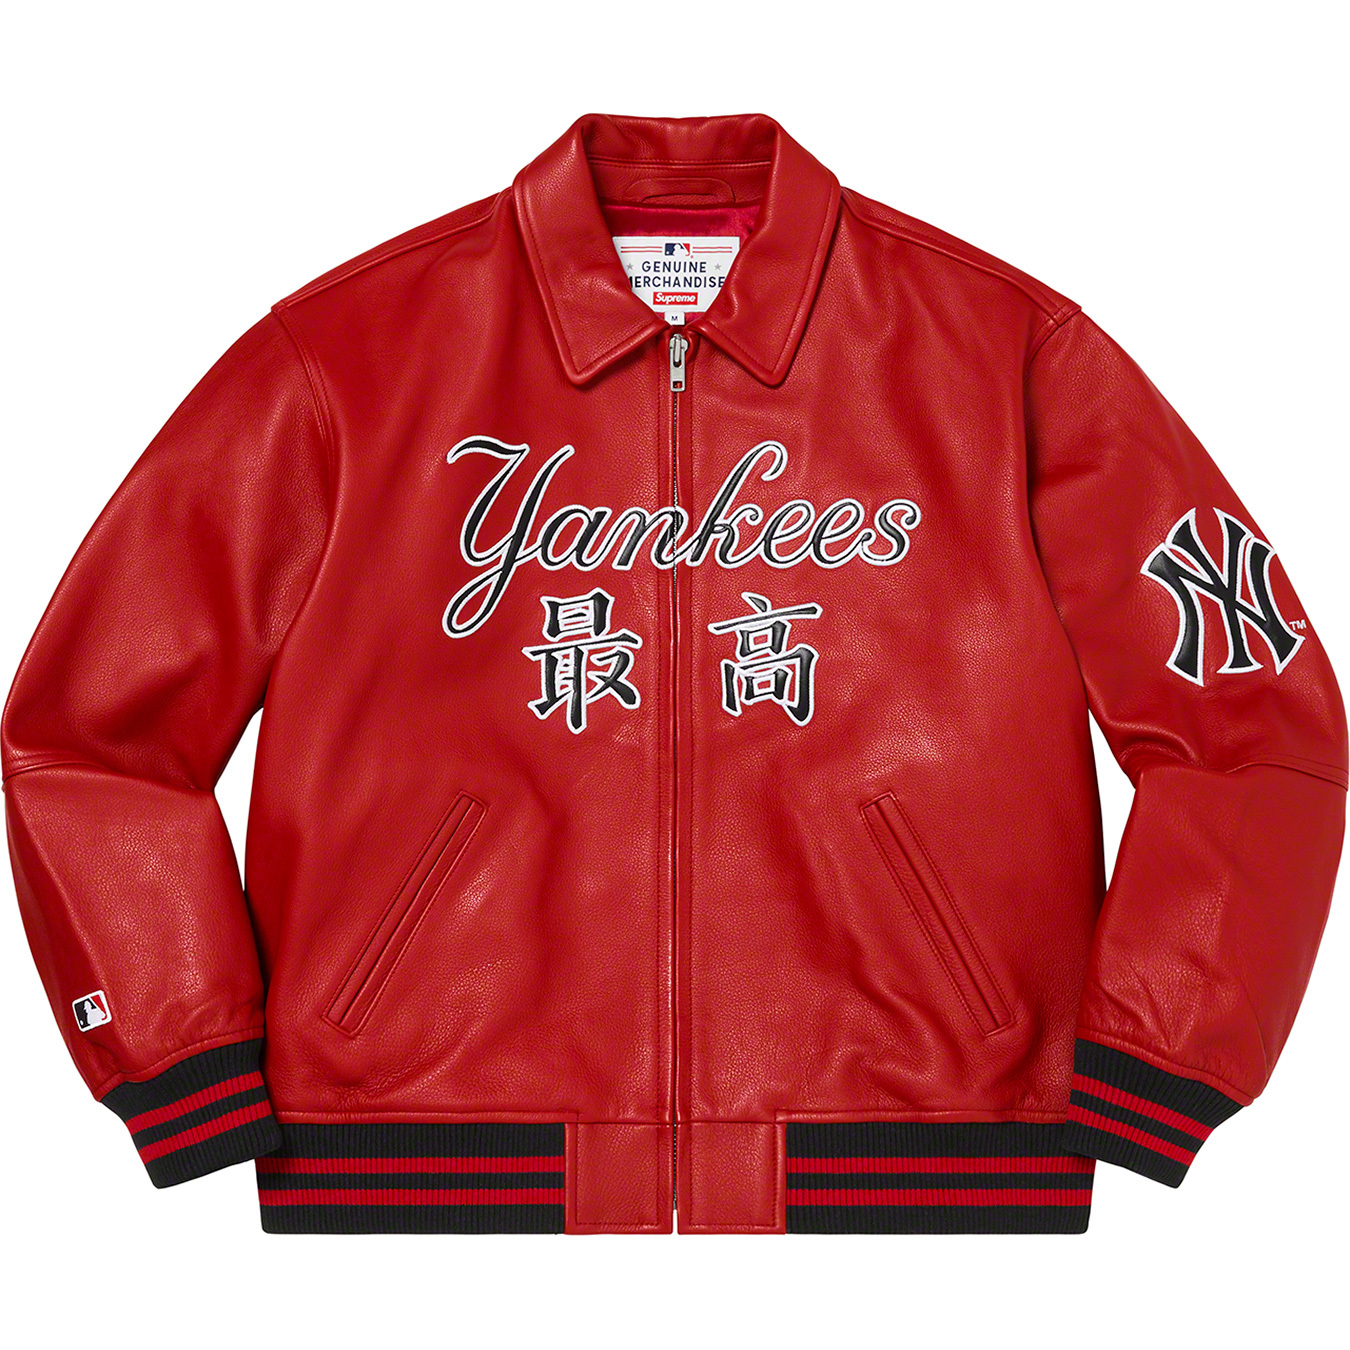 Supreme Yankees Red Leather Jacket - Maker of Jacket